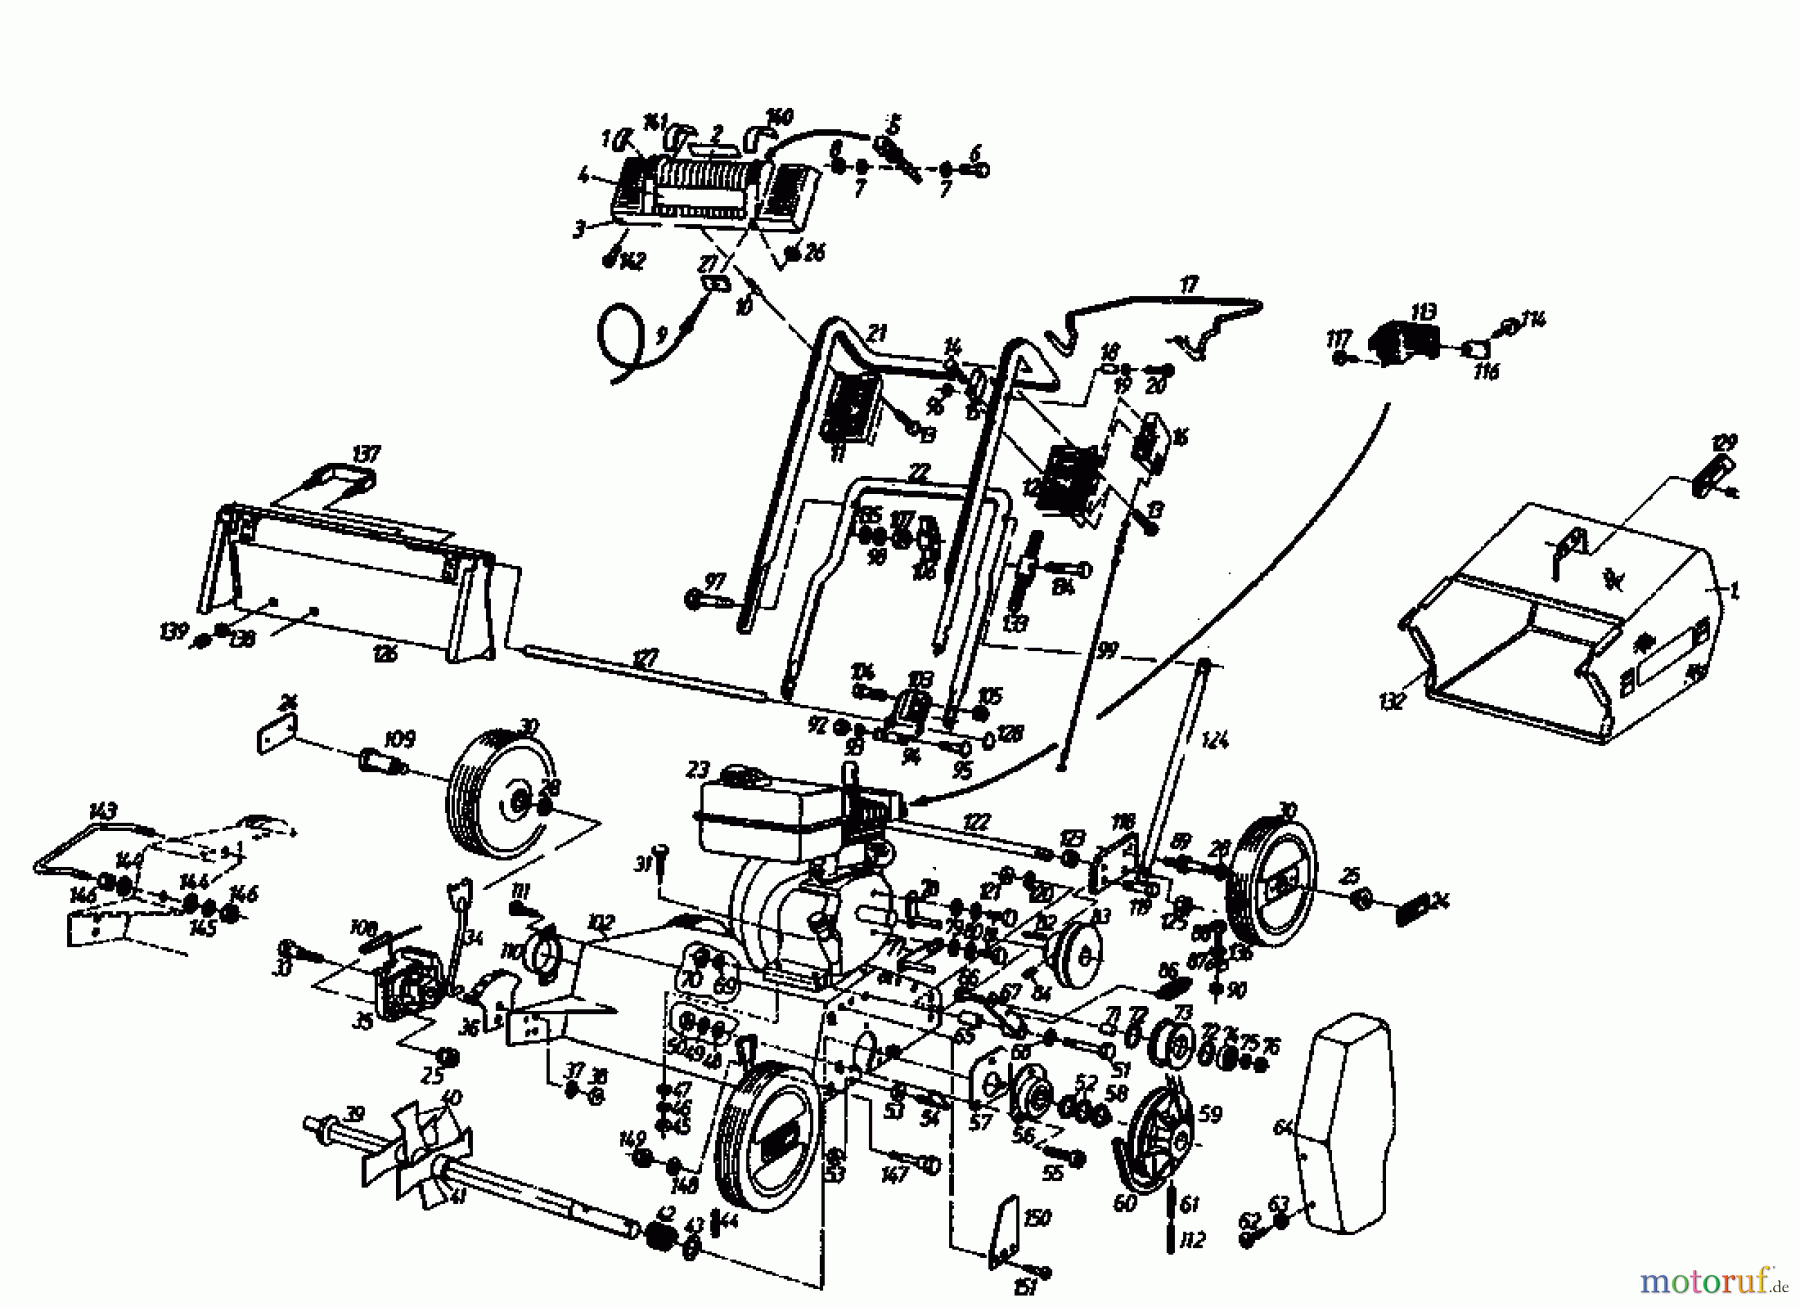  Gutbrod Motorvertikutierer MV 404 04010.01  (1994) Grundgerät